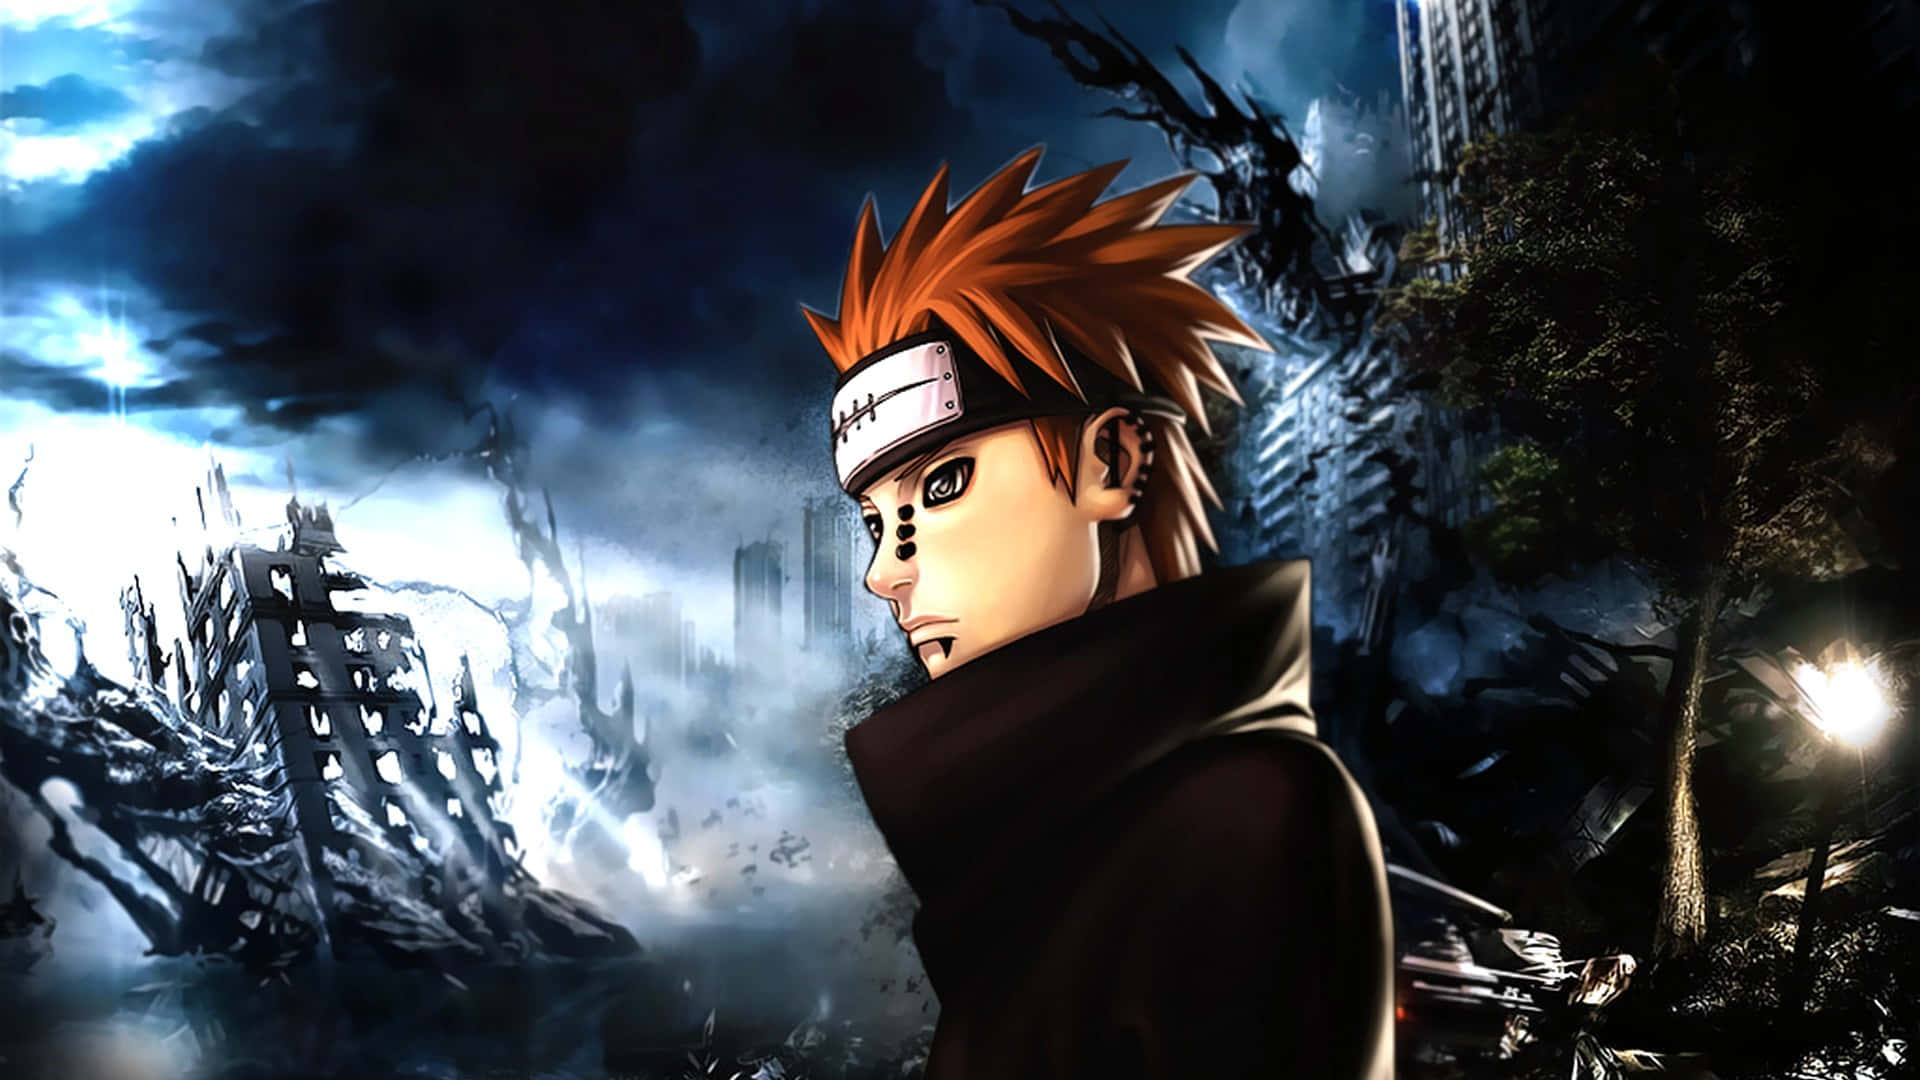 Naruto Uchiha Bruger Sine Sharingan-kræfter Til At Beskytte Sine Venner. Wallpaper